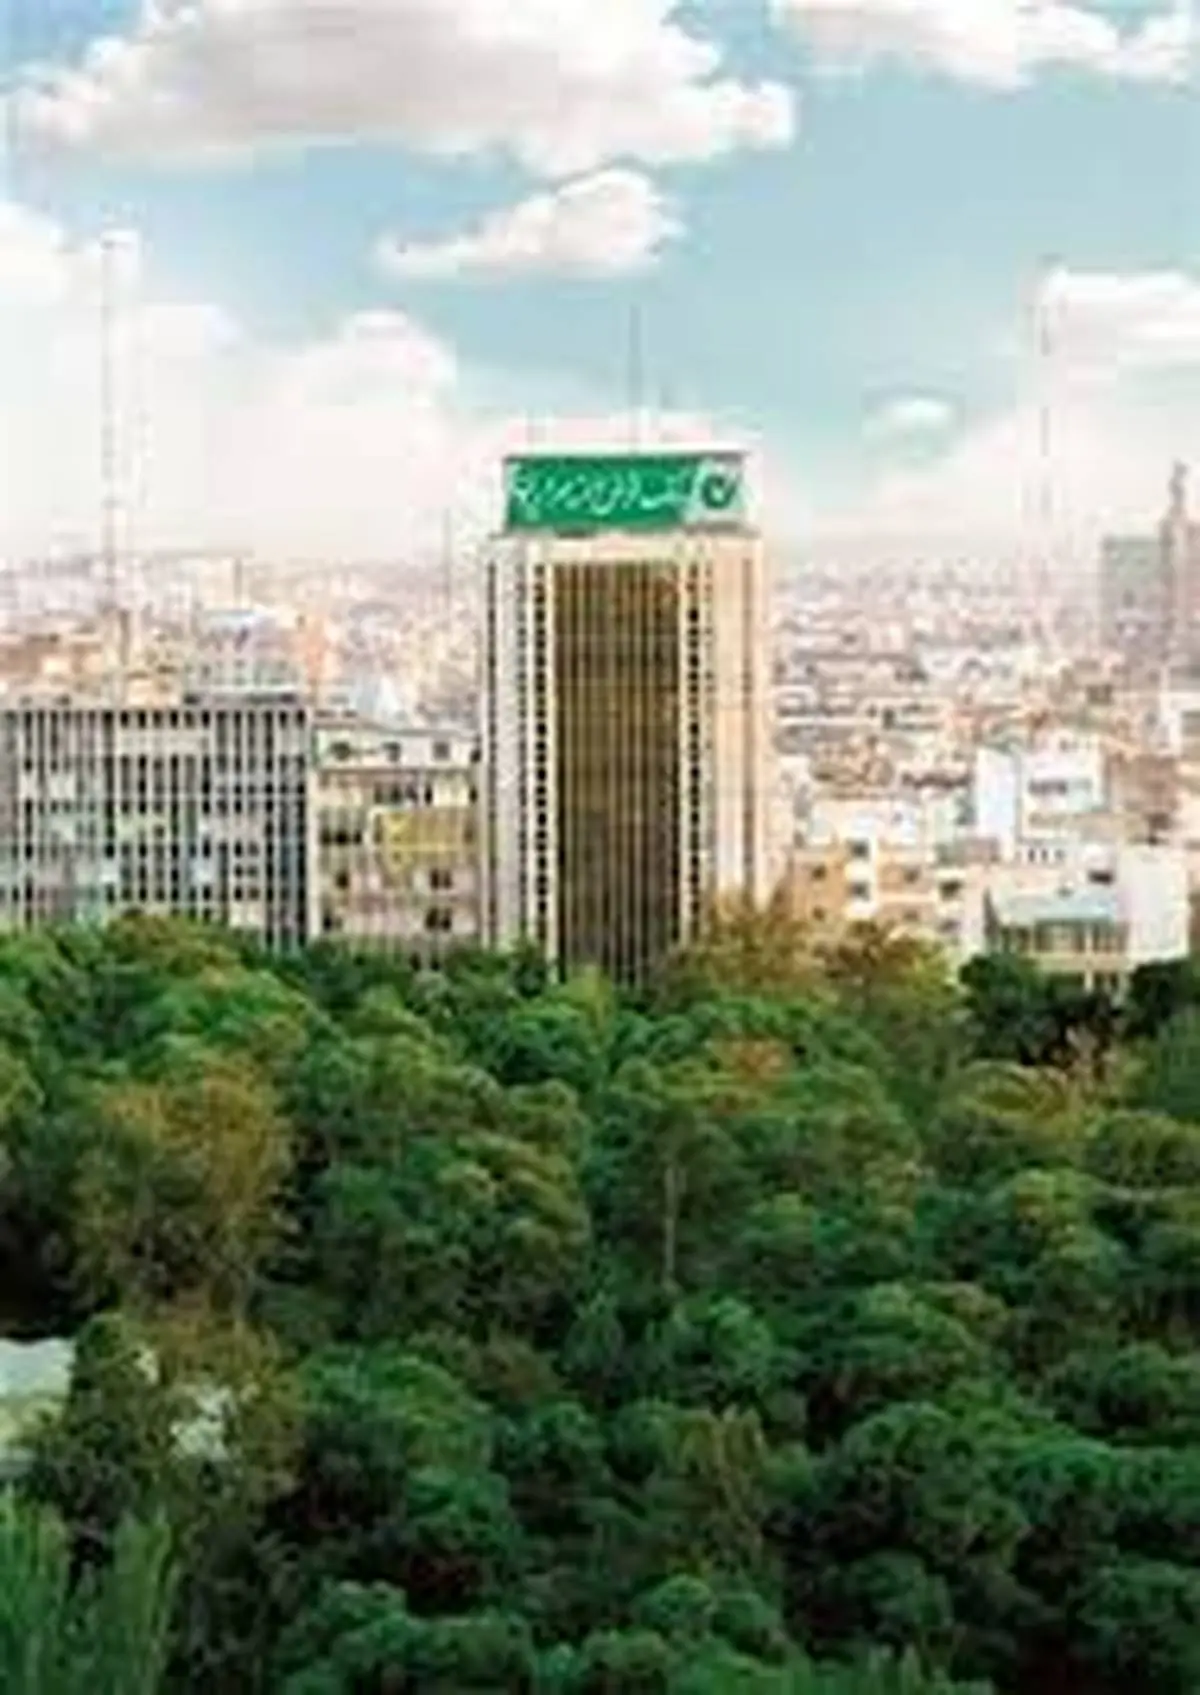 جایگاه «بانک قرض الحسنه مهر ایران» در سا لهای اخیر در سیستم بانکی کشور چه تغییری کرده